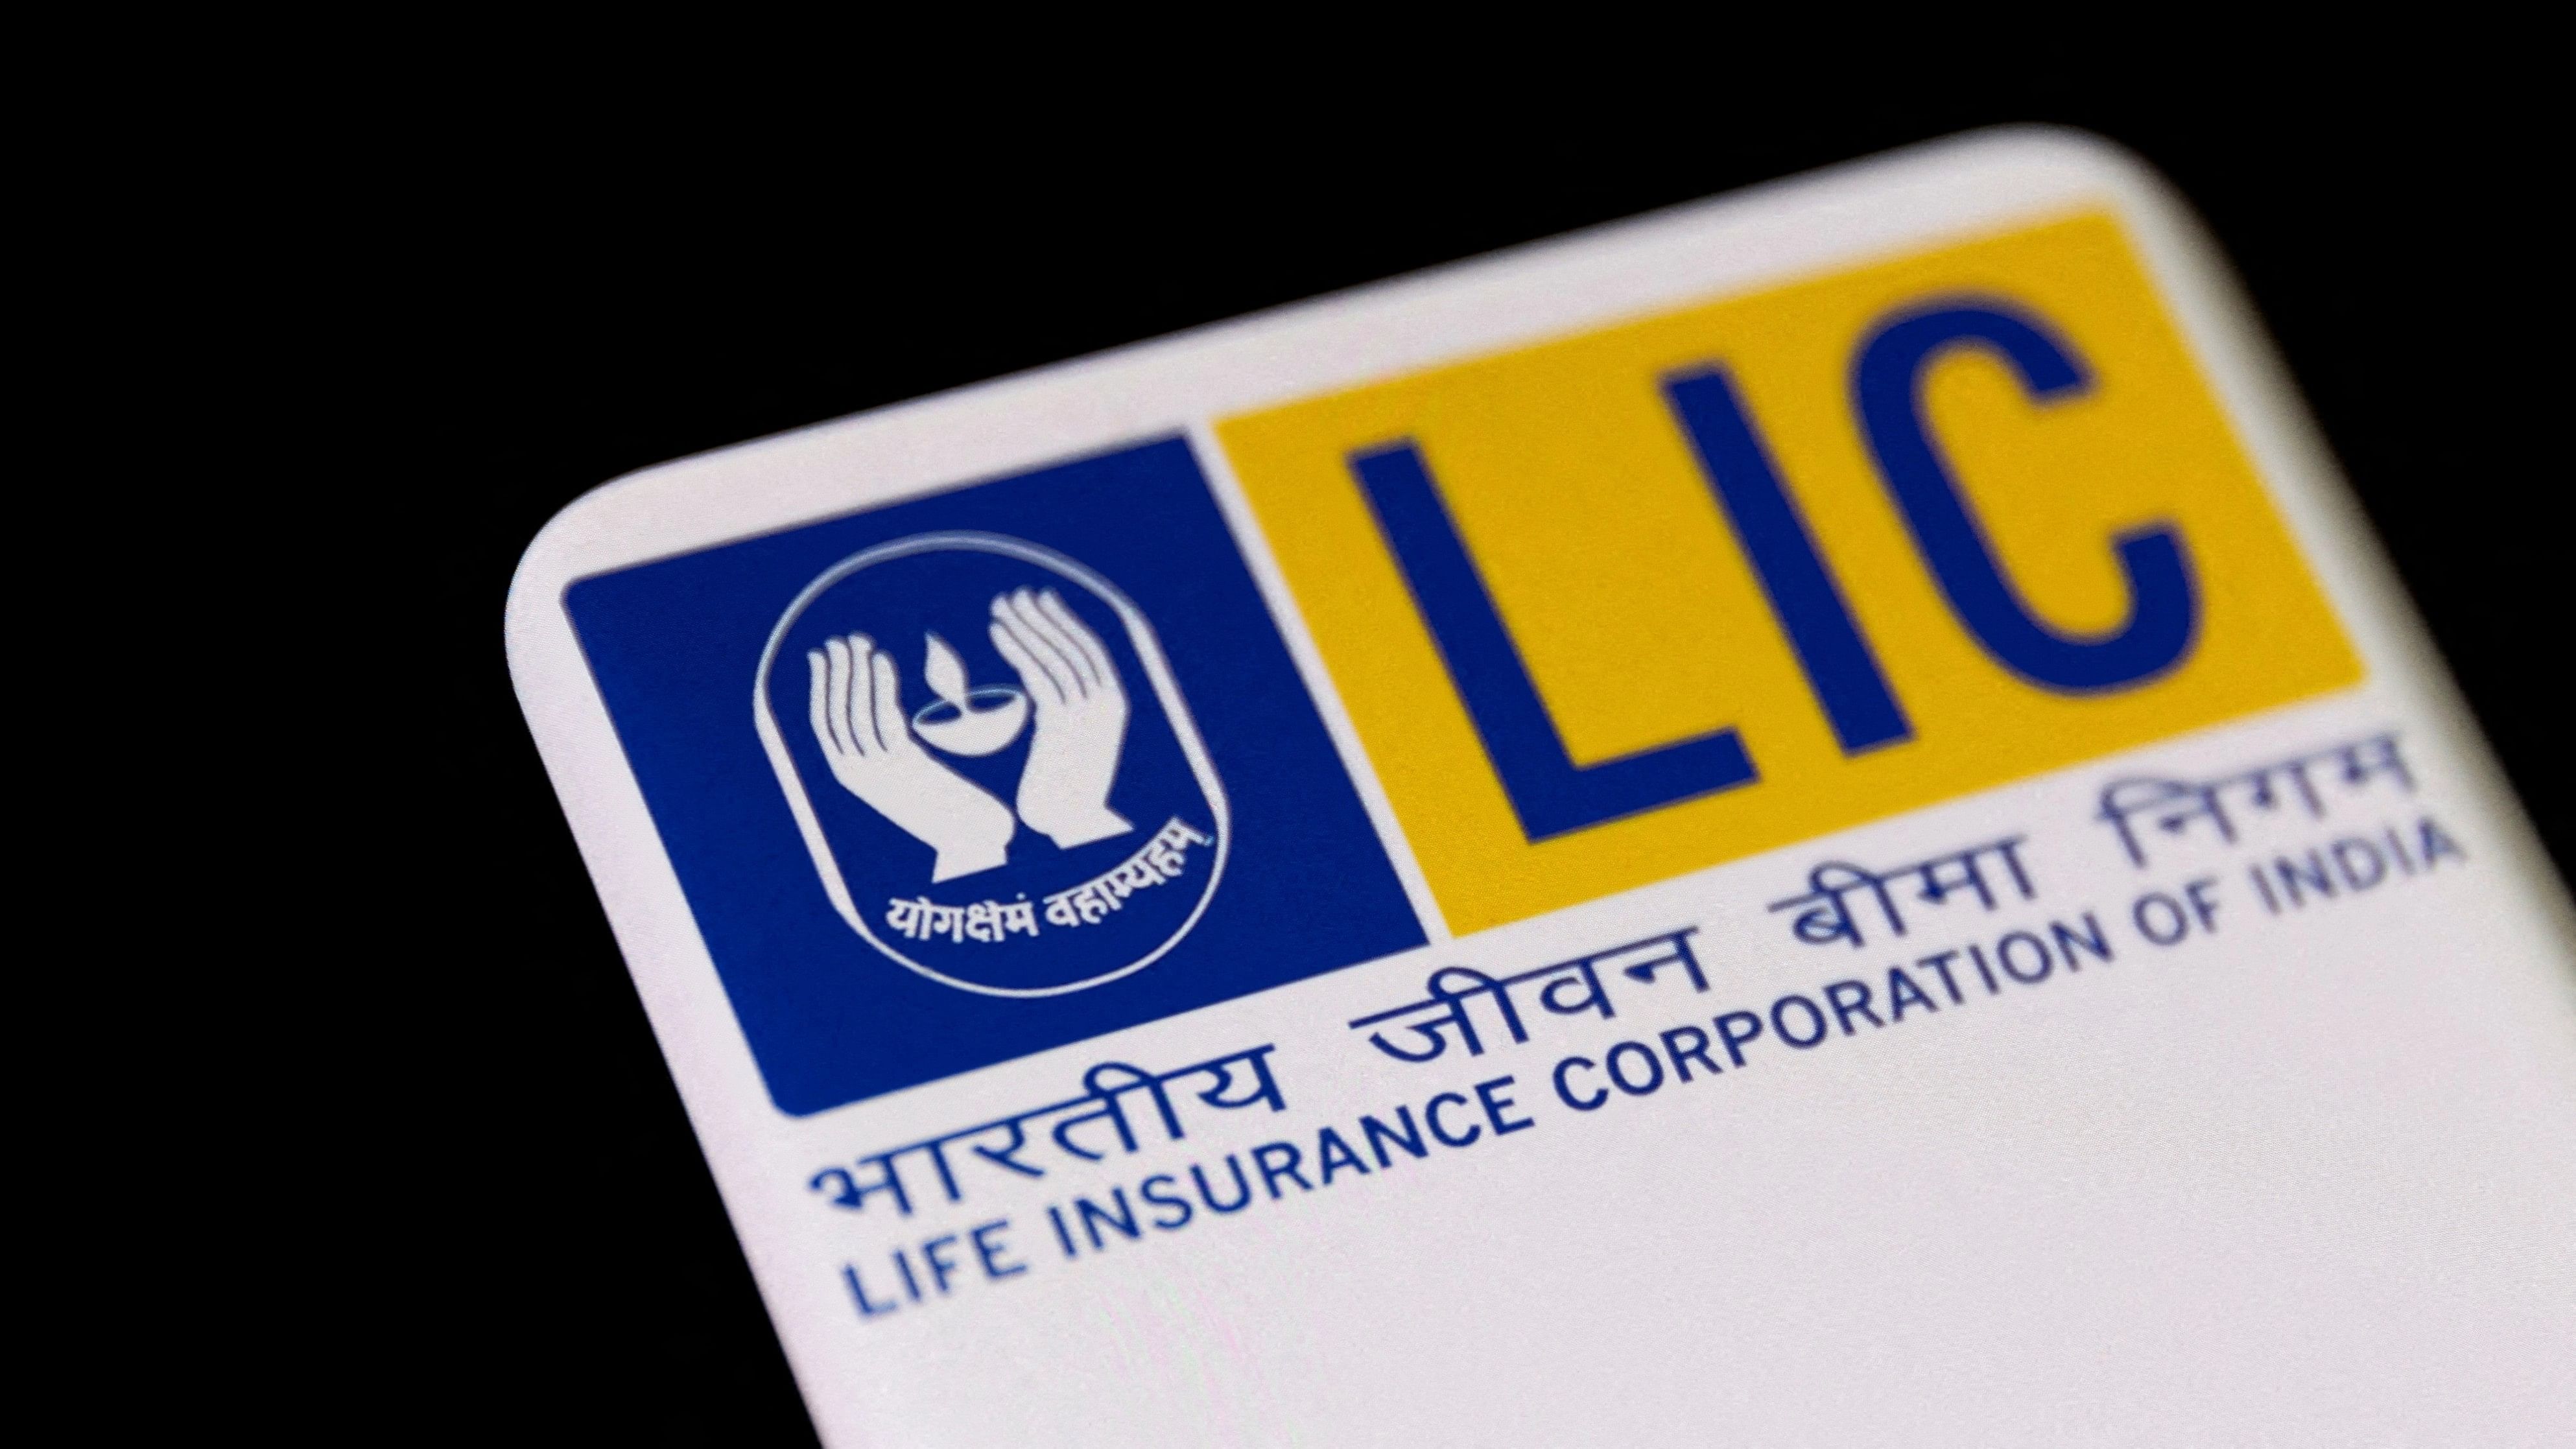 <div class="paragraphs"><p>Life Insurance Corporation of India (LIC) logo.&nbsp;</p></div>